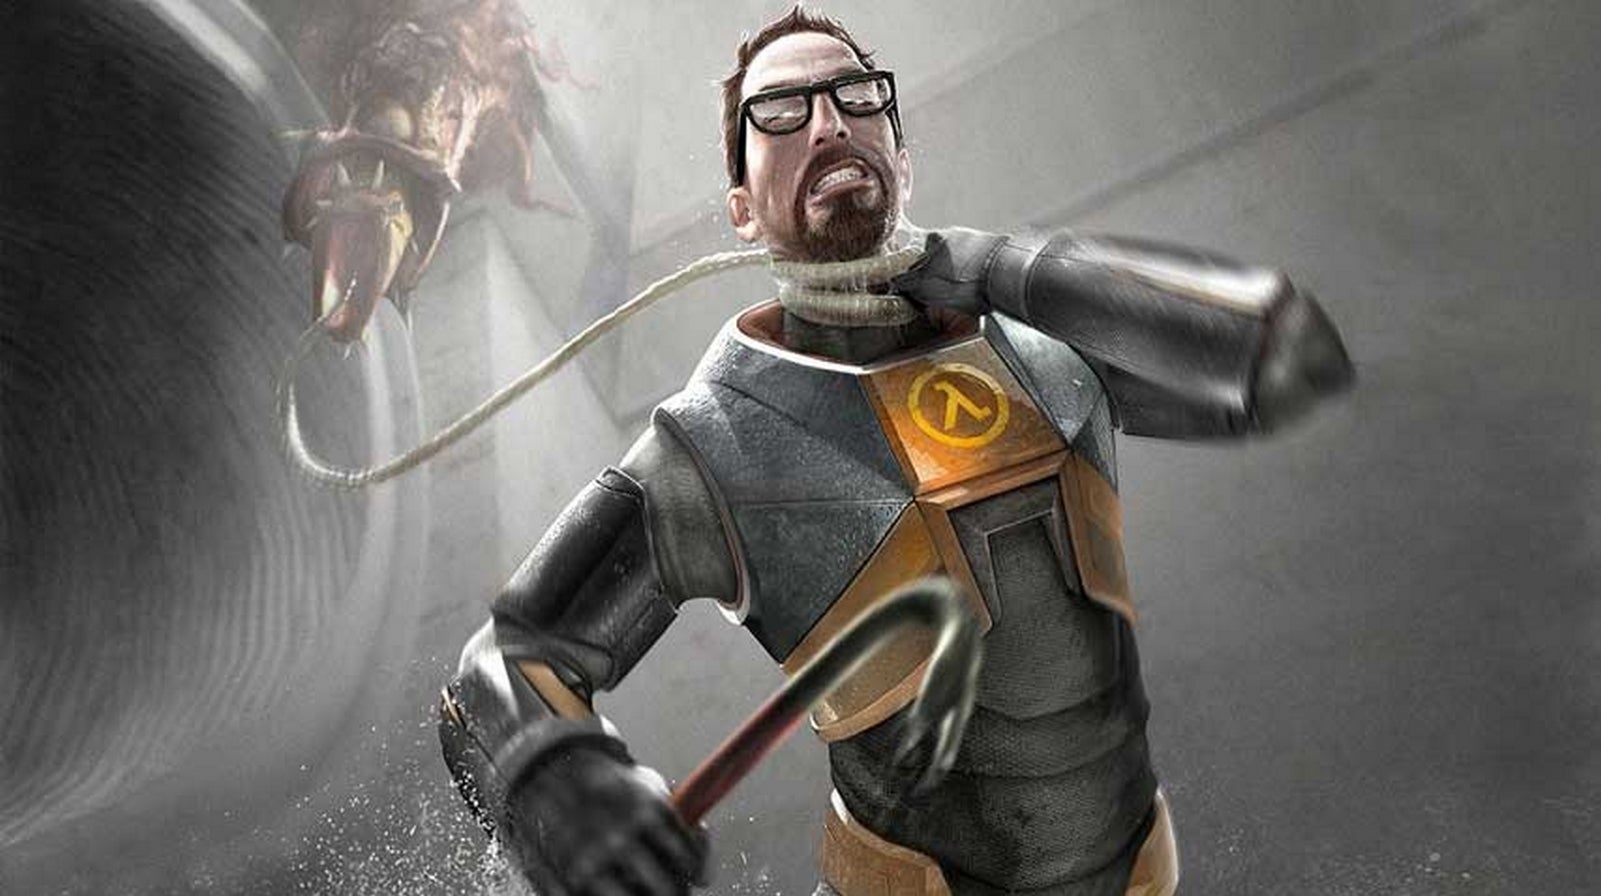 Bilder zu Half-Life 3 war ein Jahr in Arbeit, hatte prozedural generierte Elemente